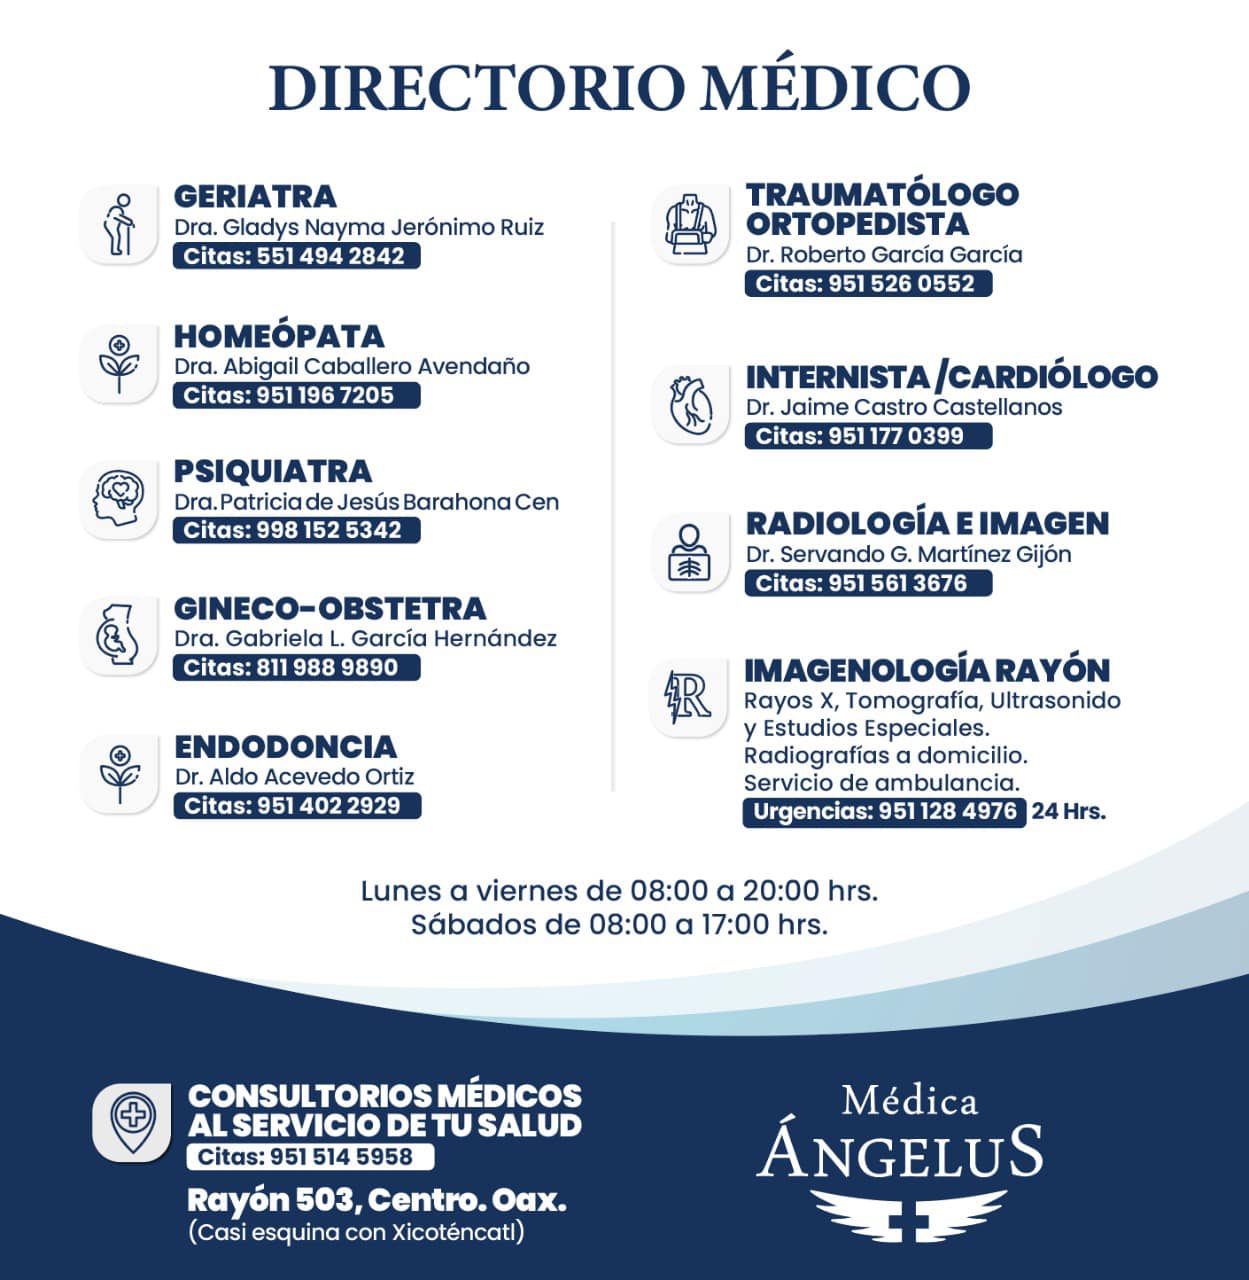 Clínica Médica Ángelus